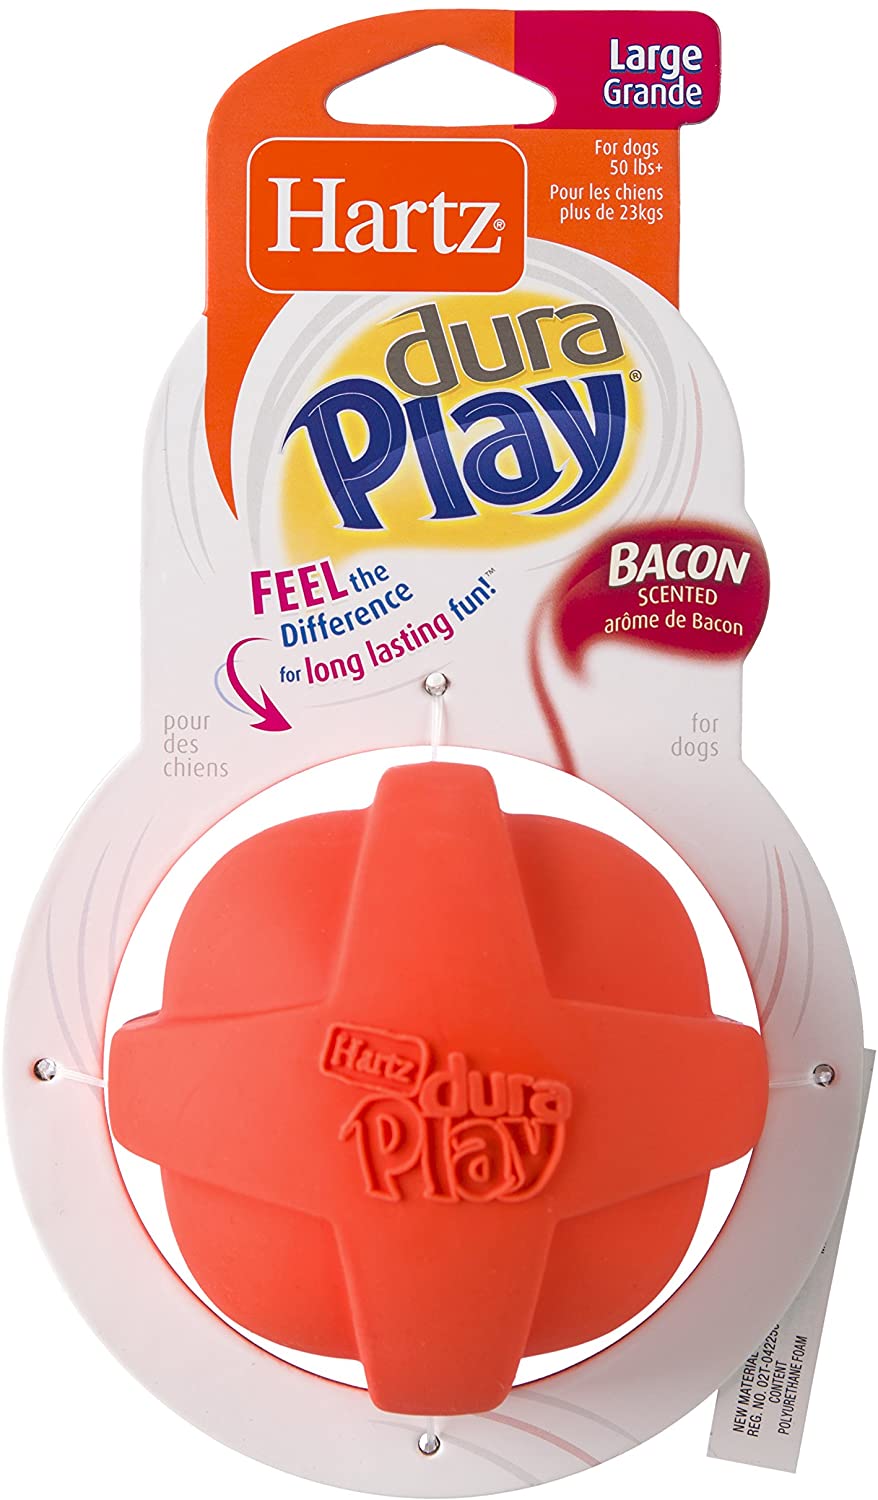 הרץ דורה פליי - כדור Hartz - Dura Play Bacon Scented Ball M צעצוע לטקס איכותי ורך מבית הרץ בצורת כדור מצפצף